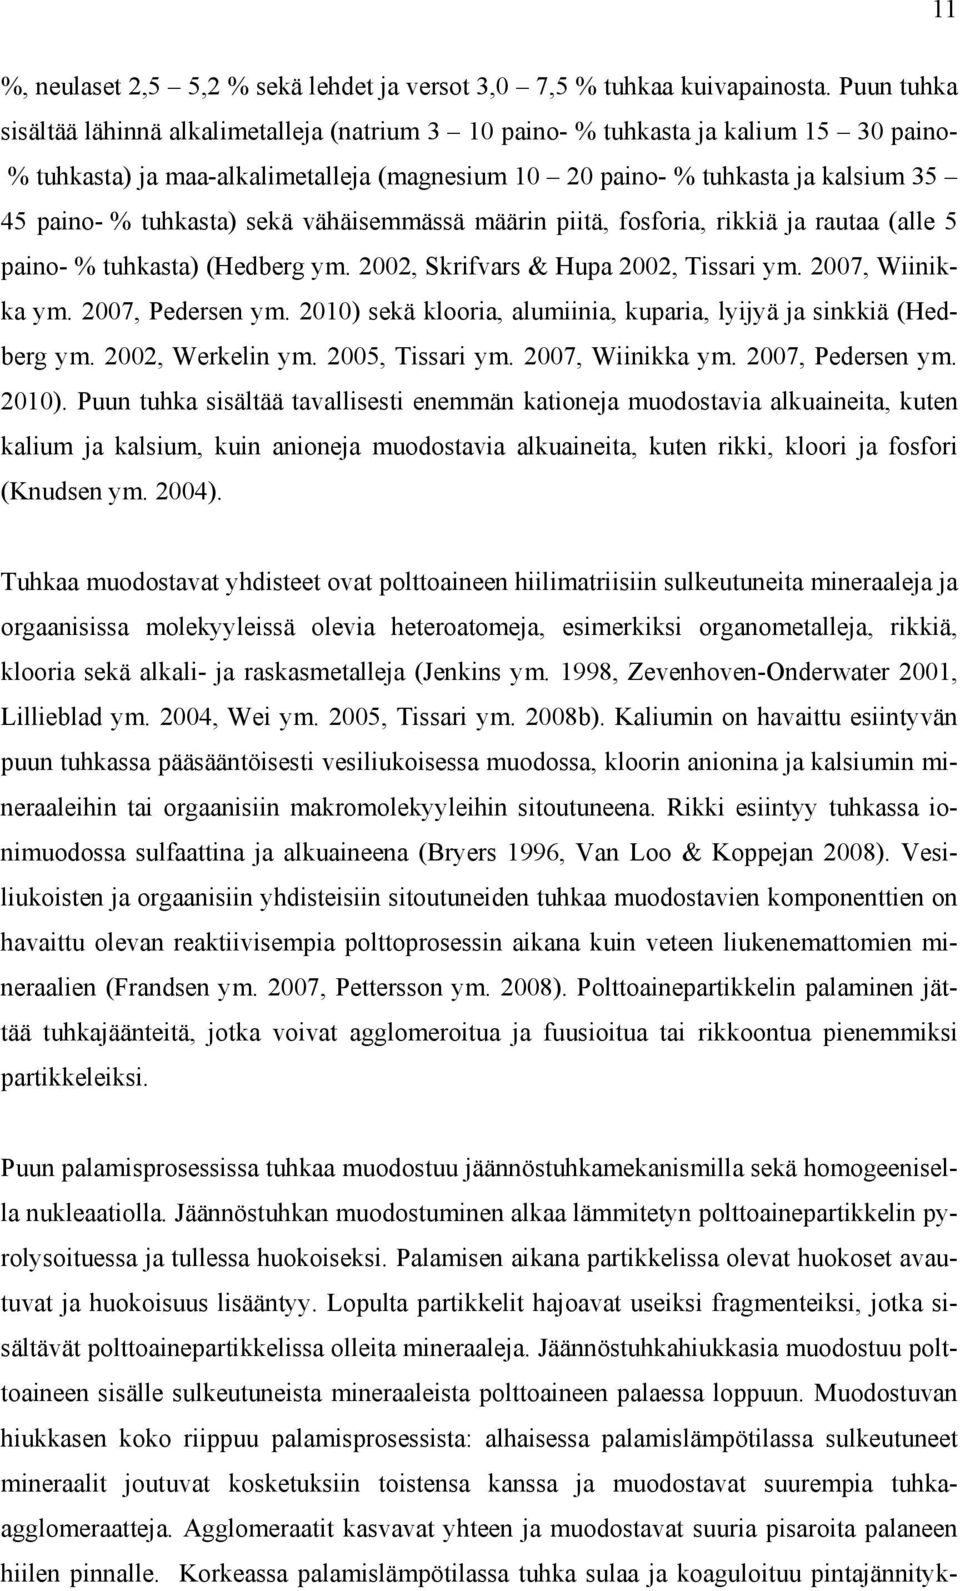 tuhkasta) sekä vähäisemmässä määrin piitä, fosforia, rikkiä ja rautaa (alle 5 paino- % tuhkasta) (Hedberg ym. 2002, Skrifvars & Hupa 2002, Tissari ym. 2007, Wiinikka ym. 2007, Pedersen ym.